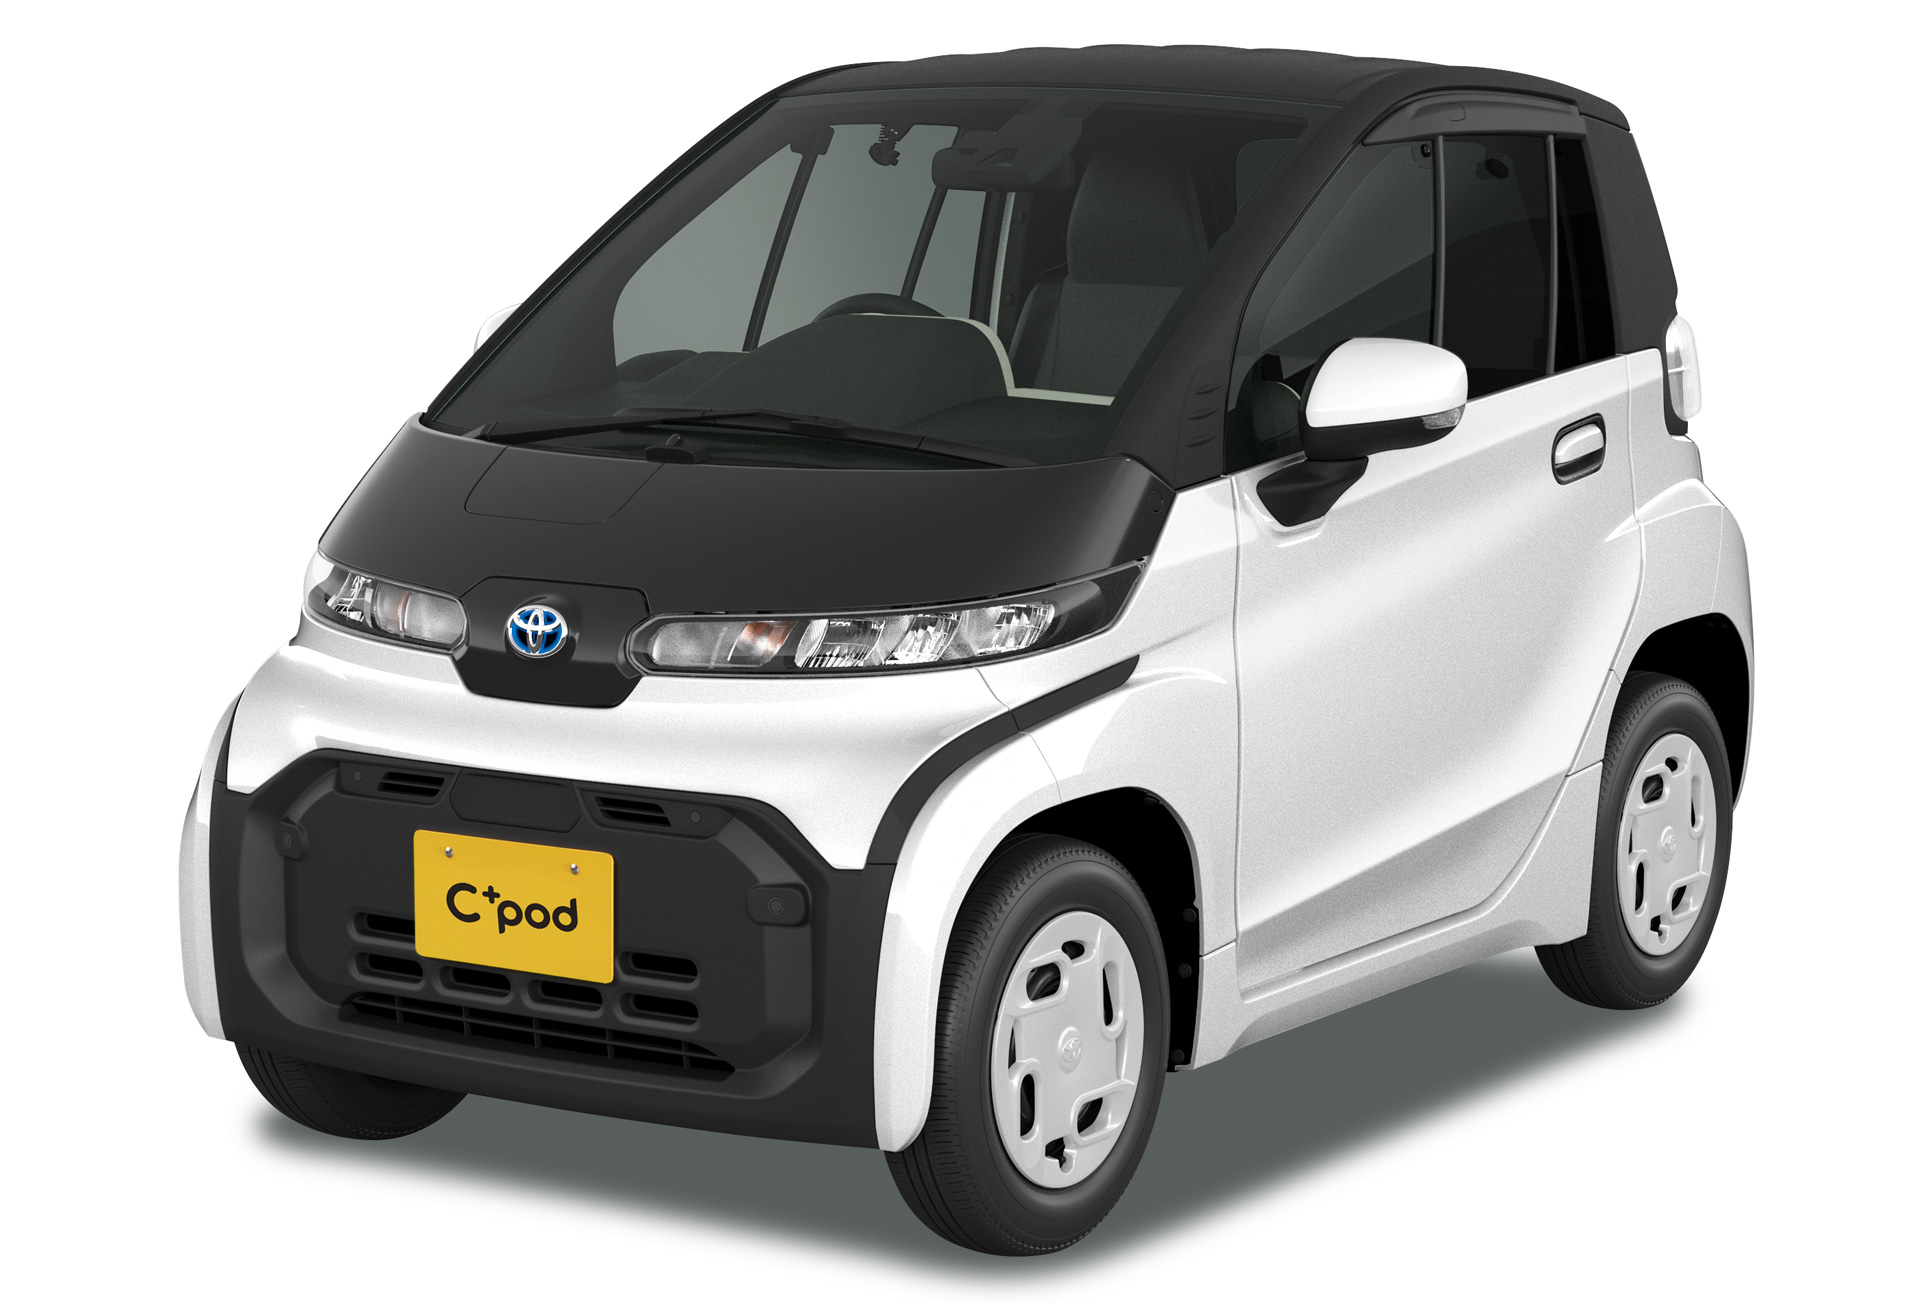 超小型EV「C+pod」を発売 | トヨタ | グローバルニュースルーム | トヨタ自動車株式会社 公式企業サイト